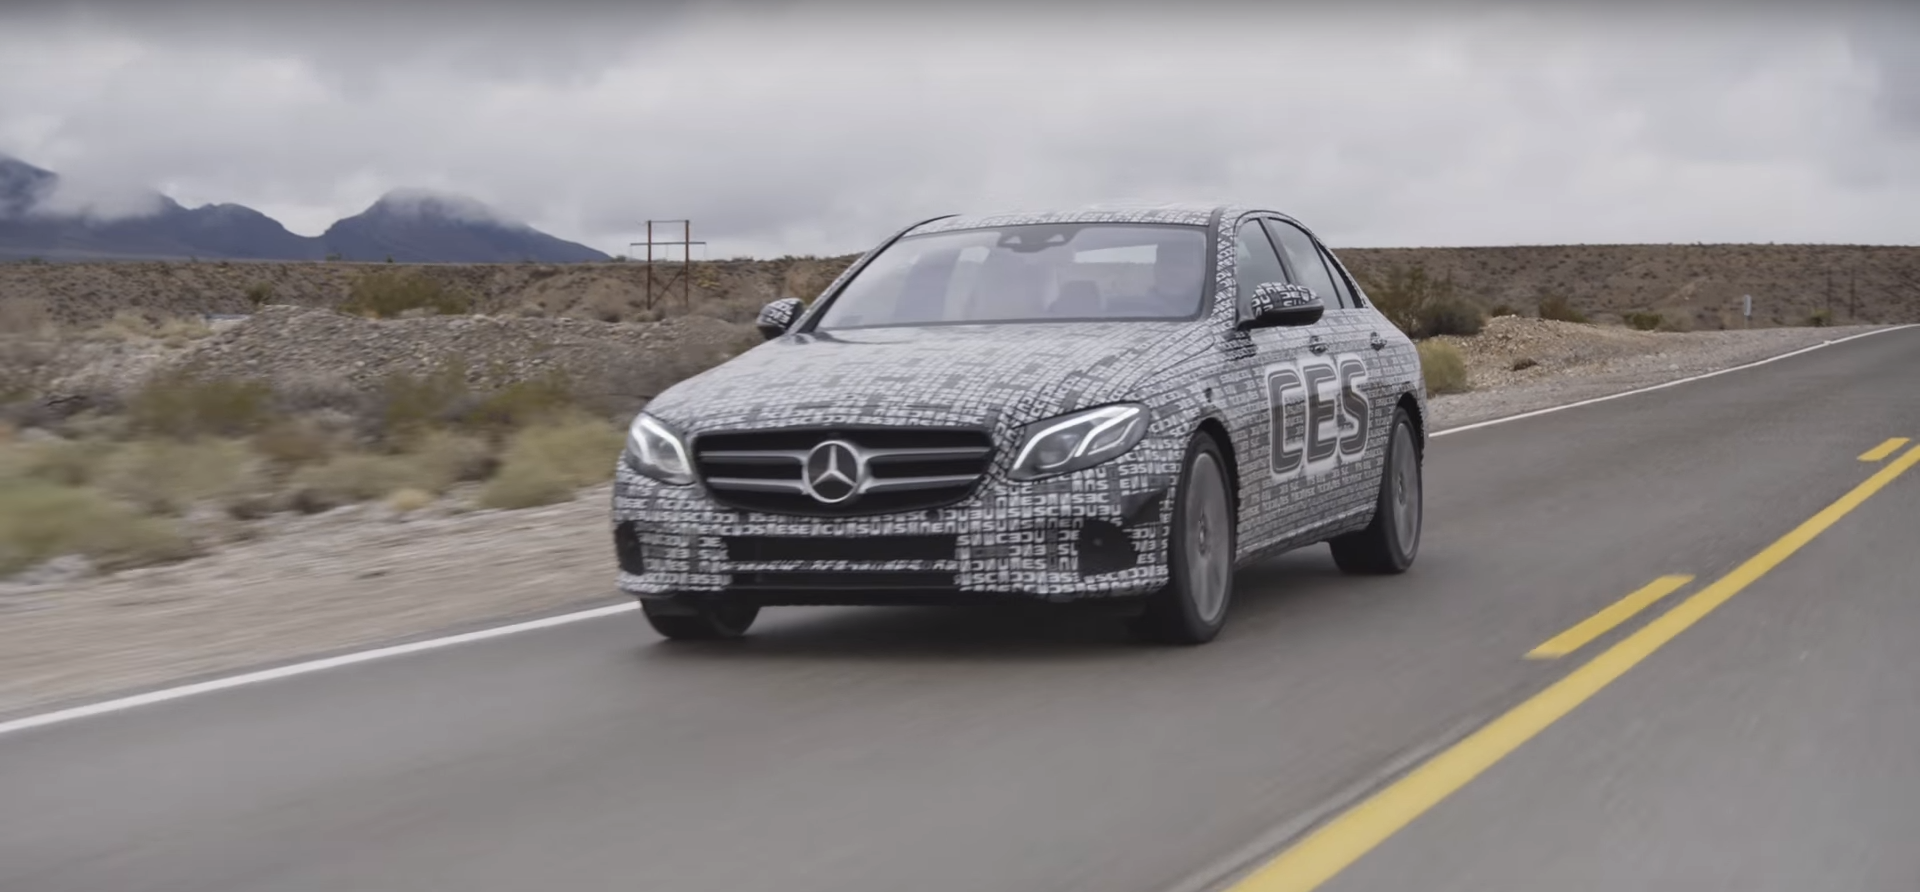 Mercedes autonomous e-class